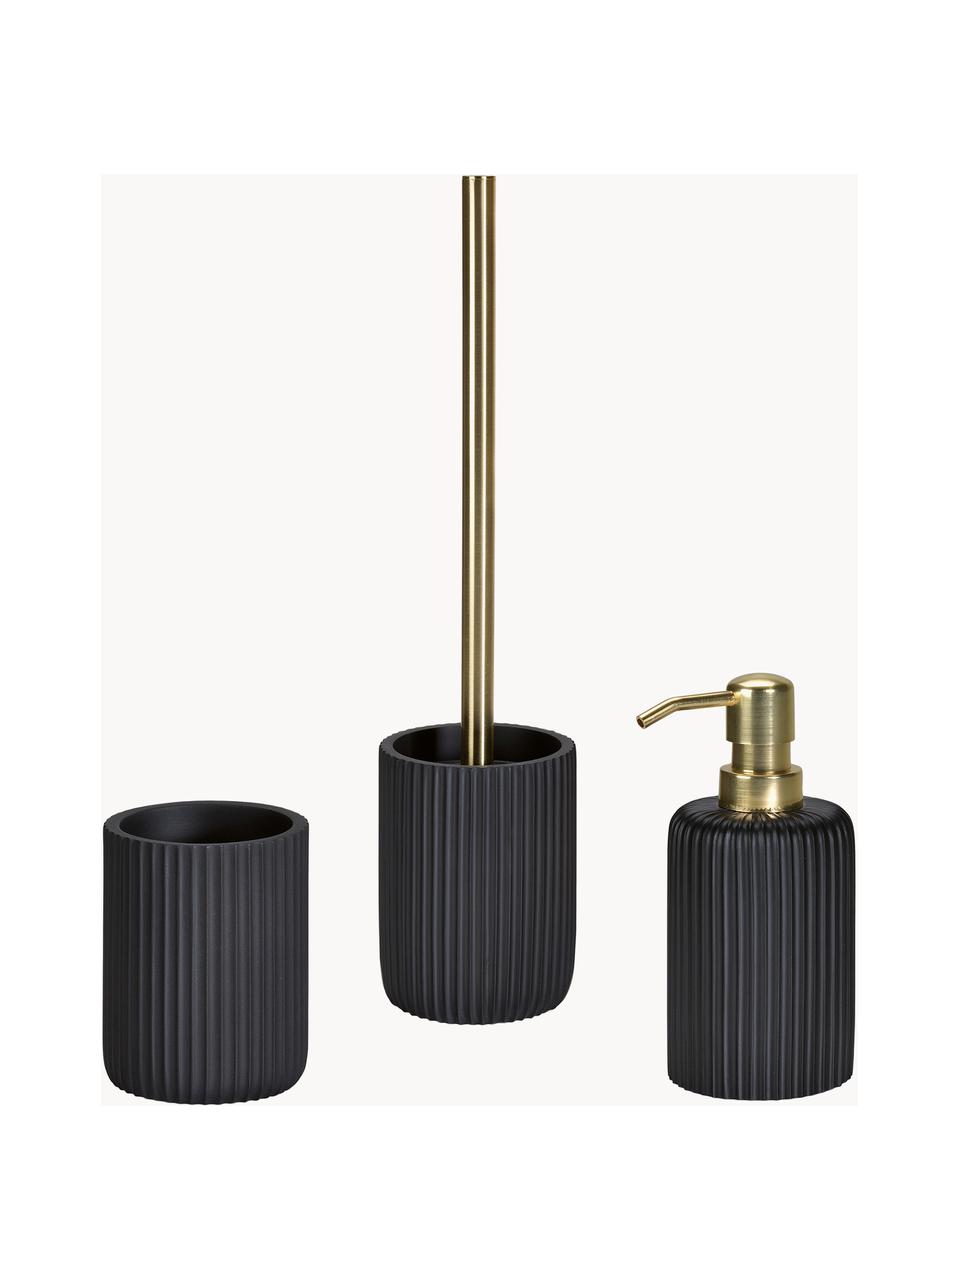 Dispenser sapone Blackheath, Contenitore: poliresina, Testa della pompa: plastica, Nero, dorato, Ø 7 x Alt. 16 cm